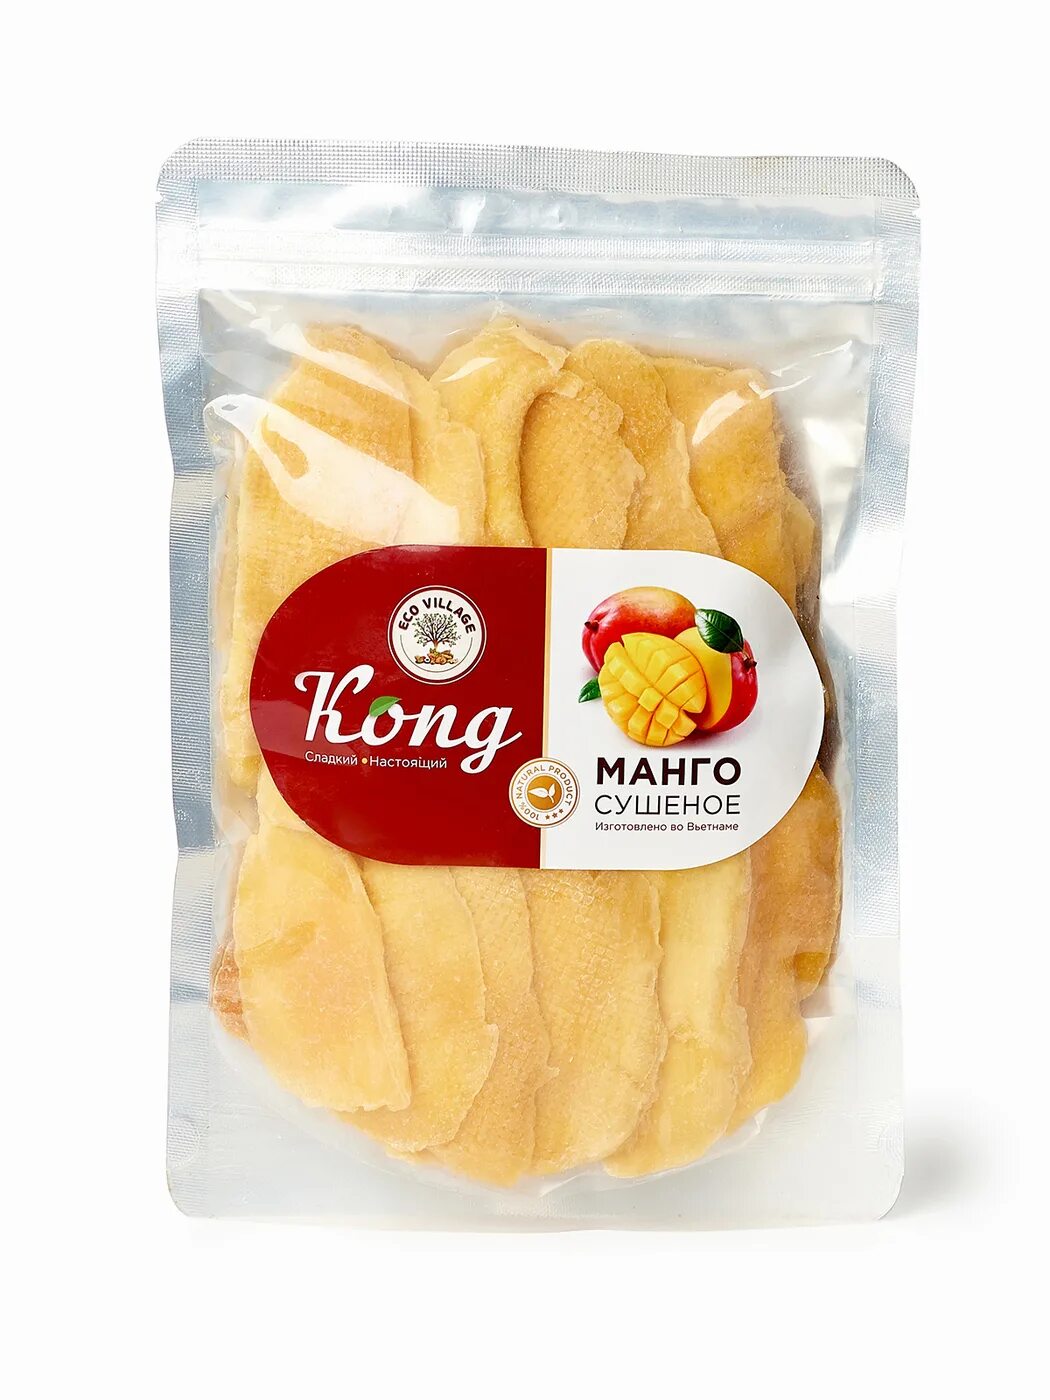 Манго сушеный Конг 500г. Манго сушеное Конг 500 гр. Конг сушеный манго 500 кг. Kong манго сушеный натуральный.